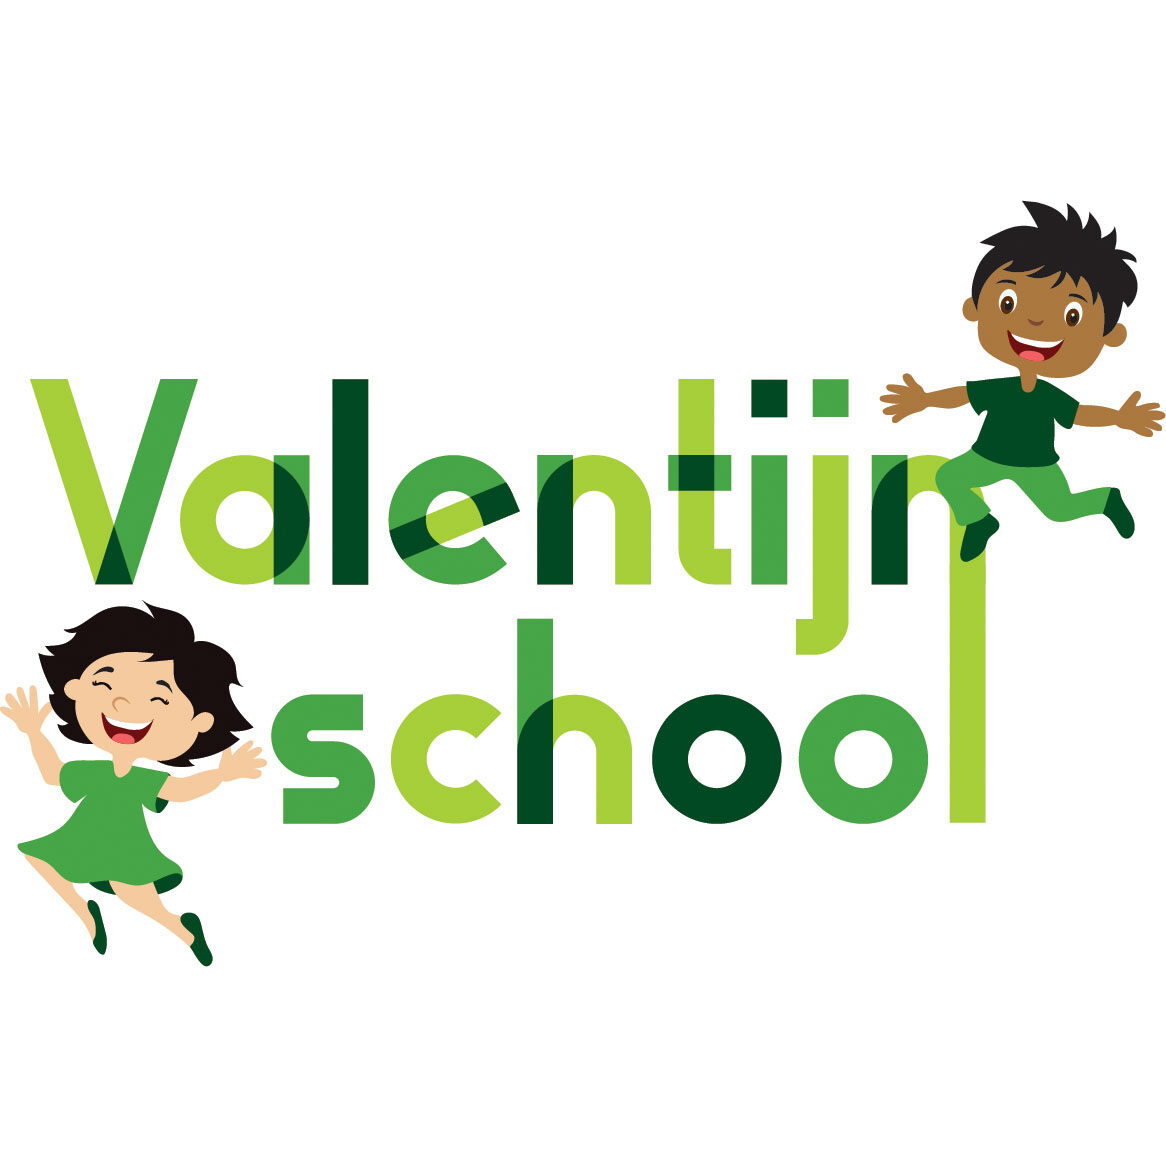 Valentijnschool